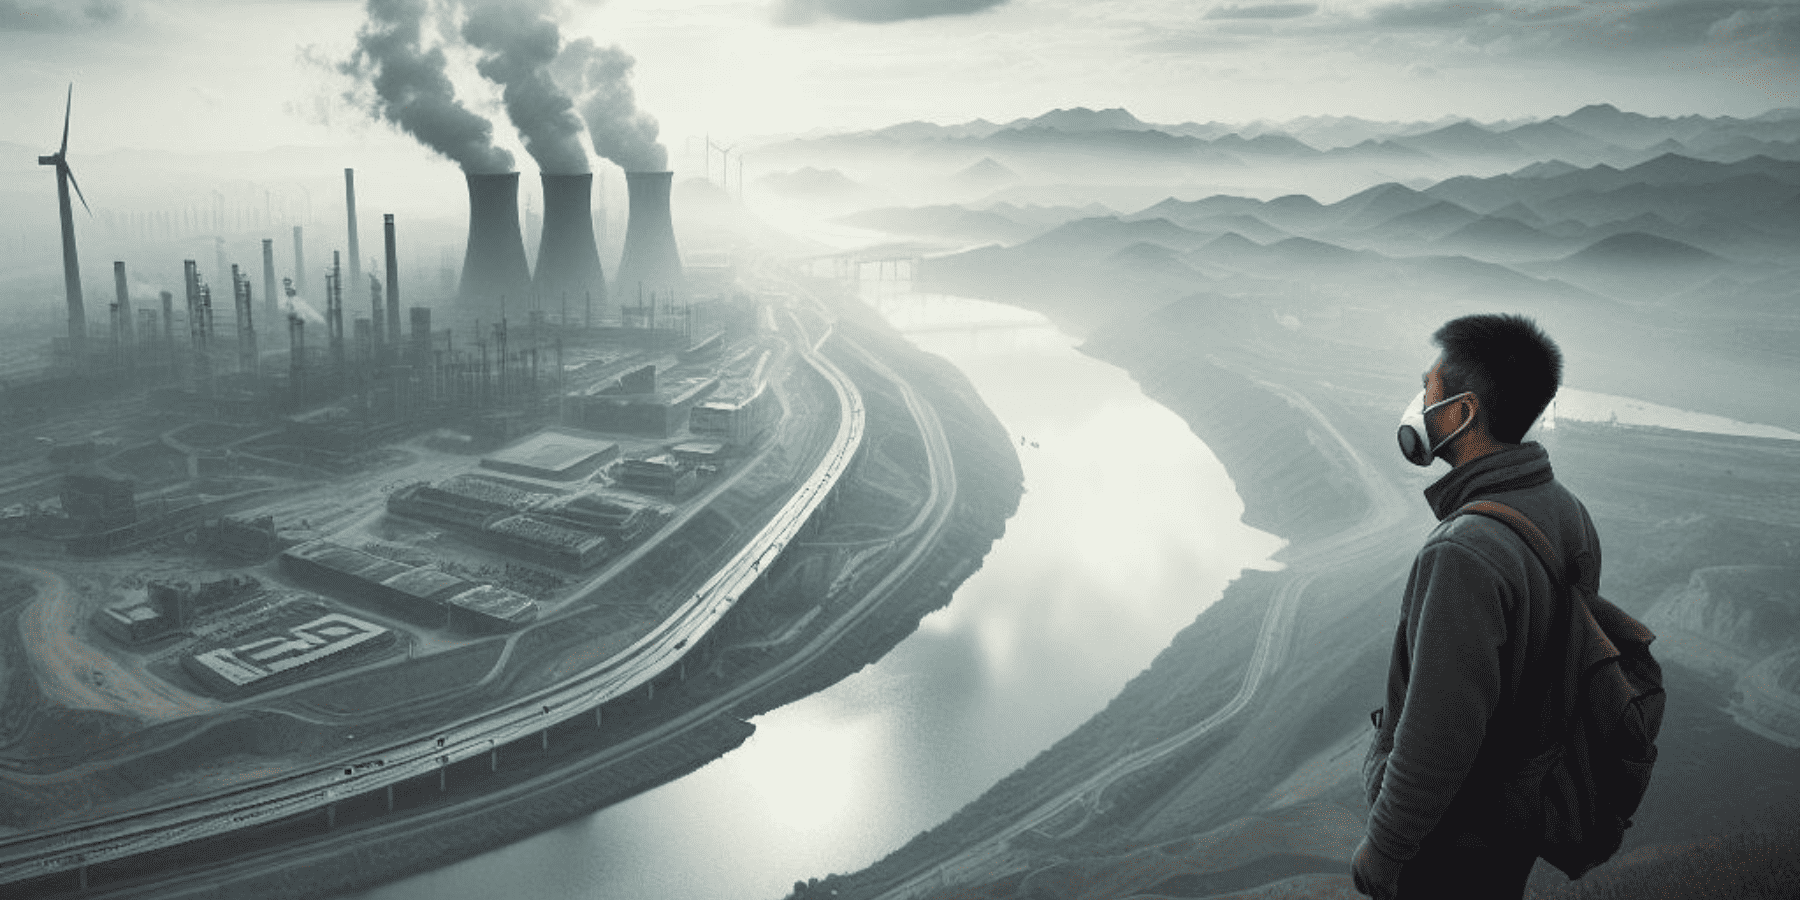 Chiny importują rekordowo dużo węgla, choć jego udział w miksie energetycznym maleje